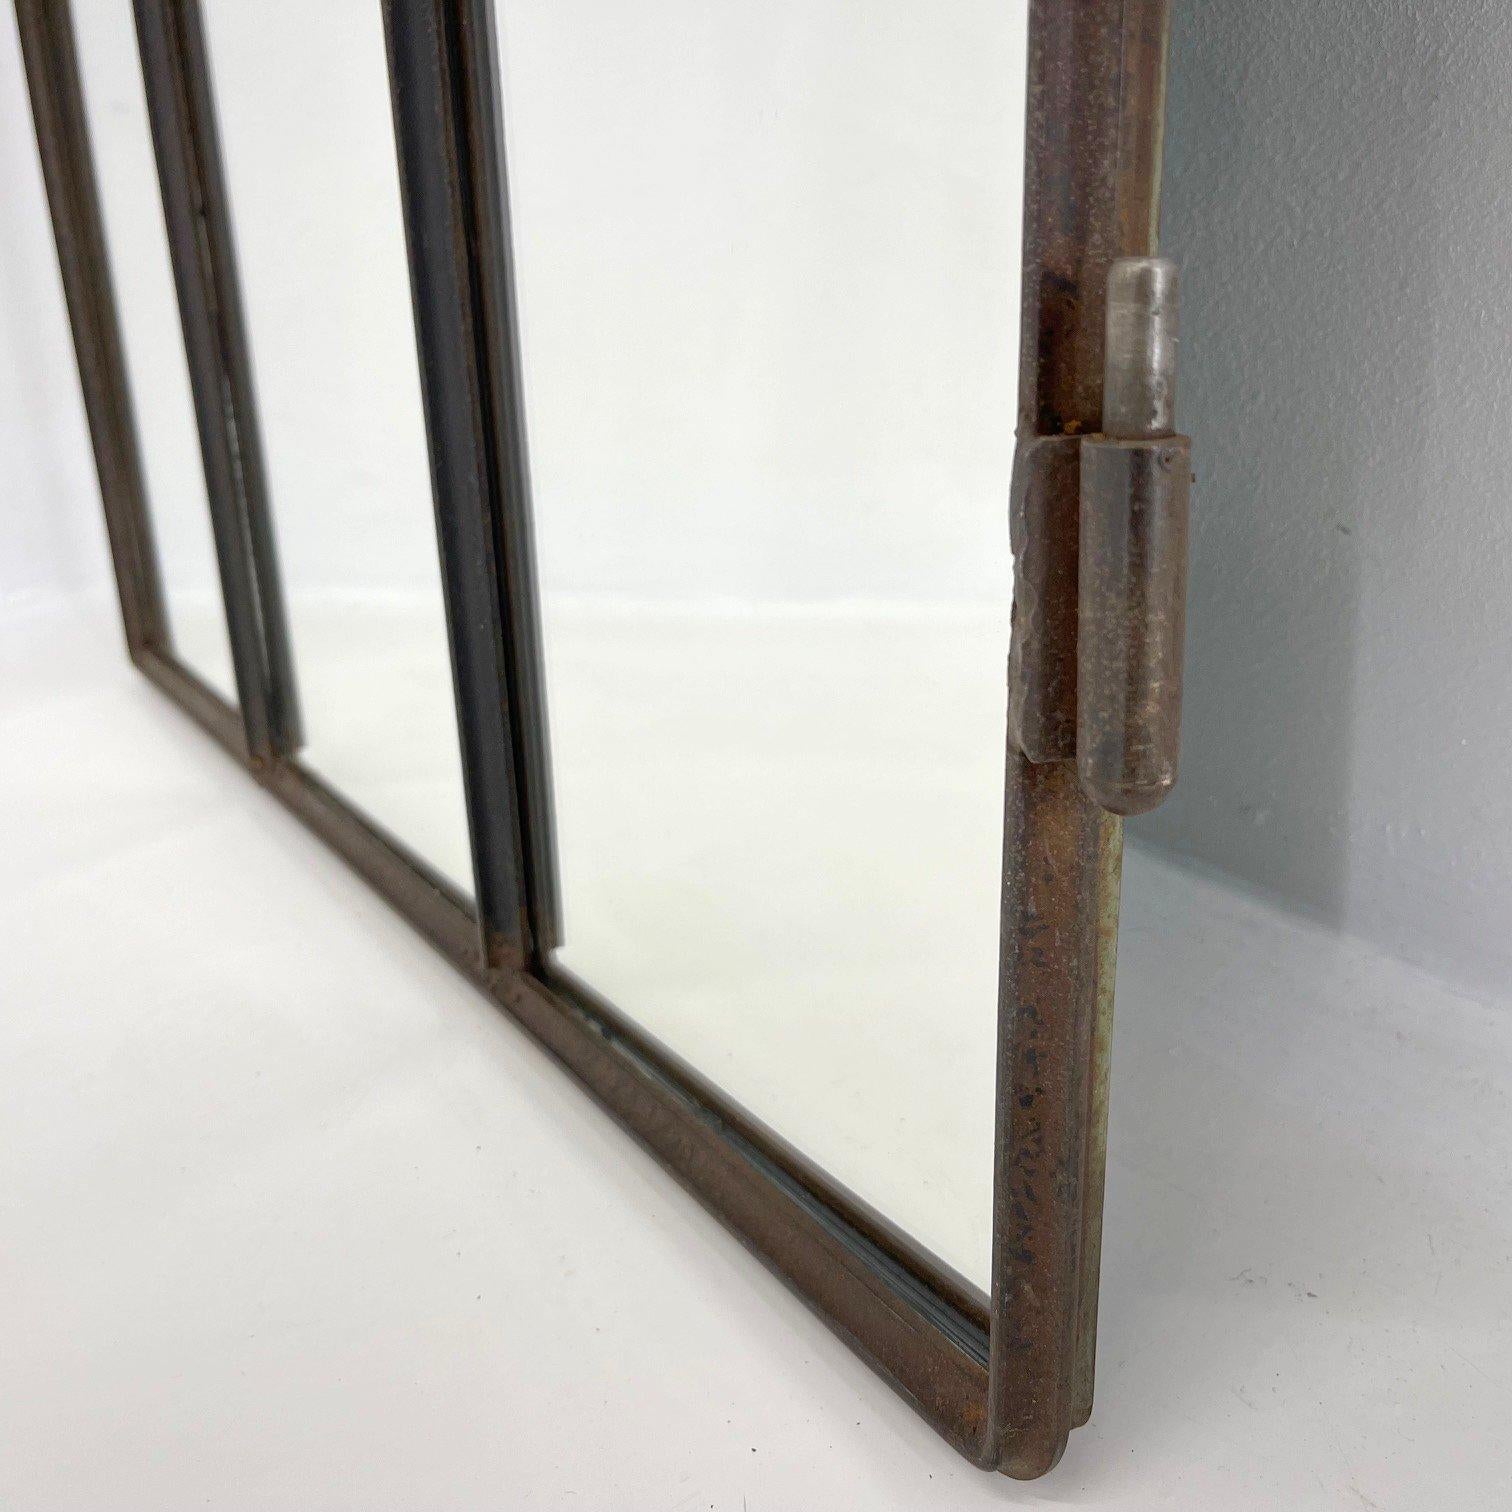 Tchèque Vieille fenêtre industrielle en fer transformée en miroir